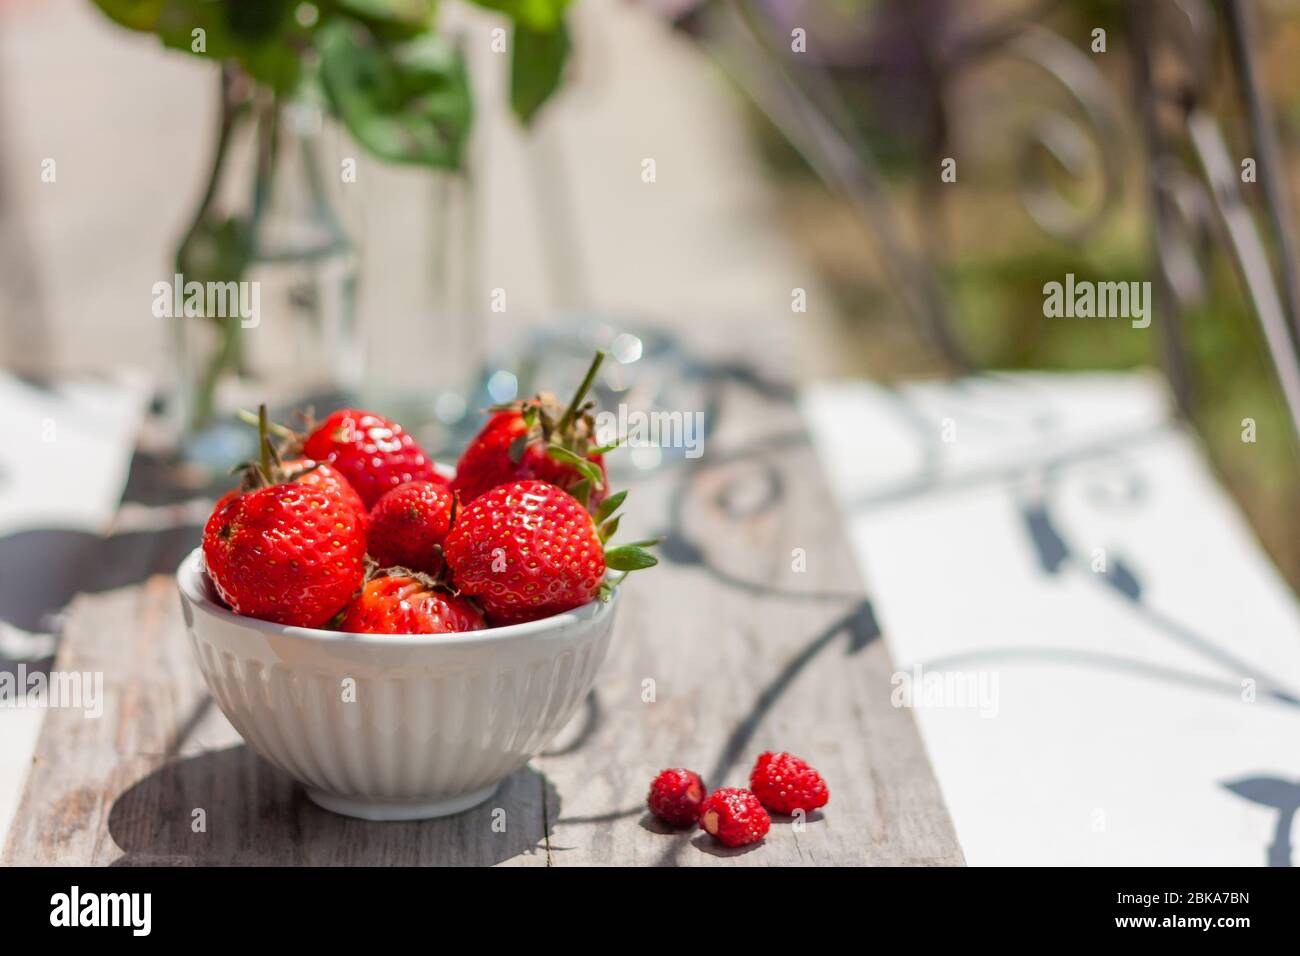 Obstschale voll mit frischen, roten, juckigen Erdbeeren auf Holztisch. Dekoration mit Blumenarrangement. Platz für Text Stockfoto